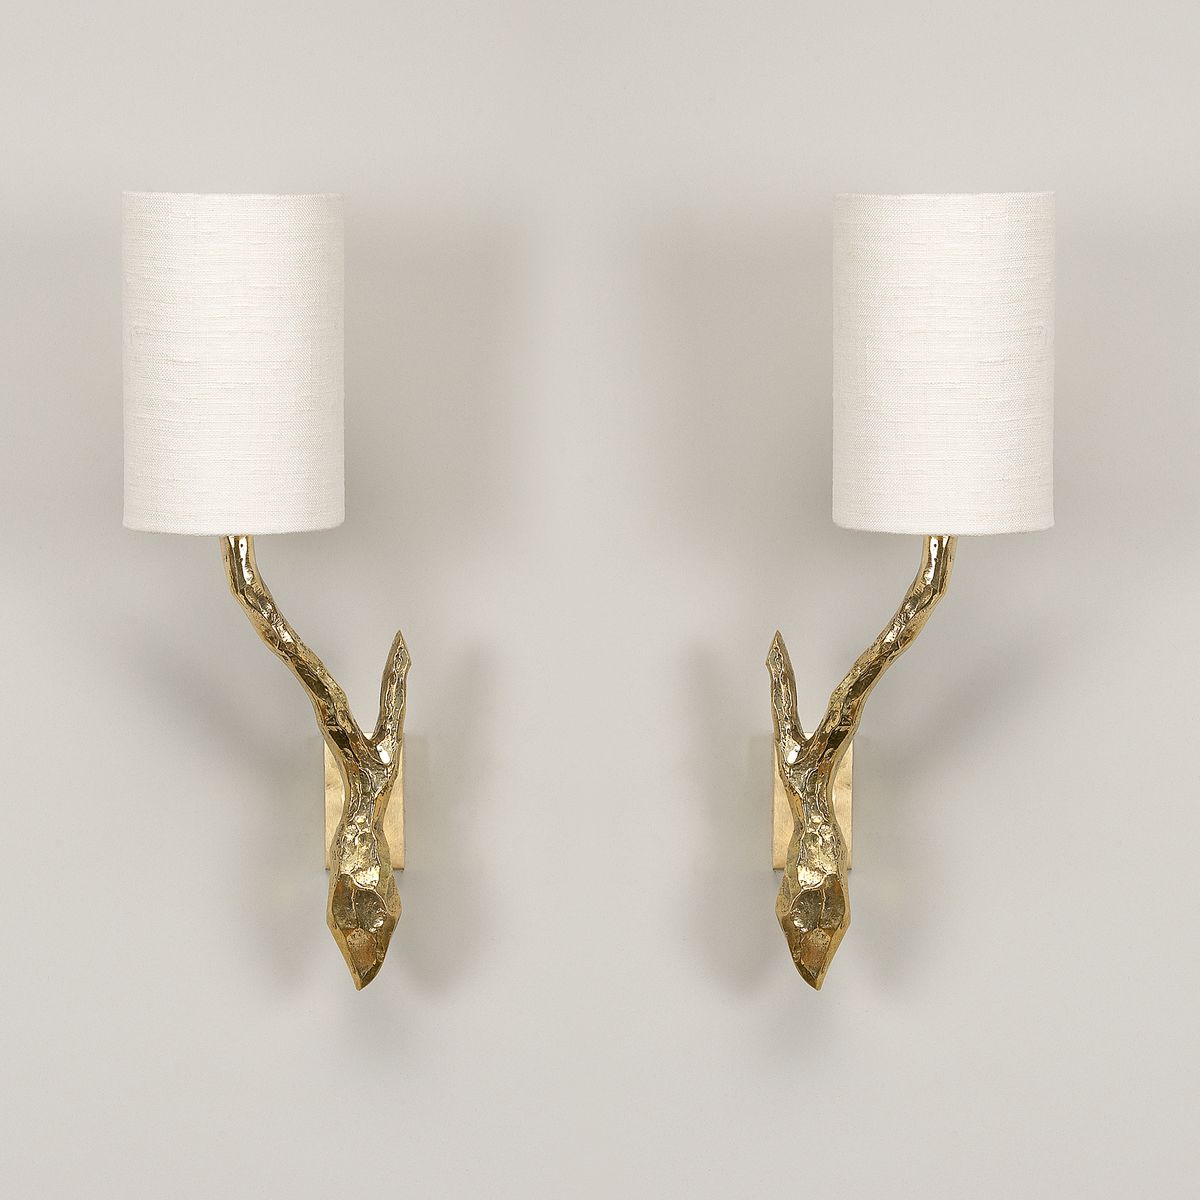 Twig Wall Light - Antique Brass | Nicholas Engert Interiors